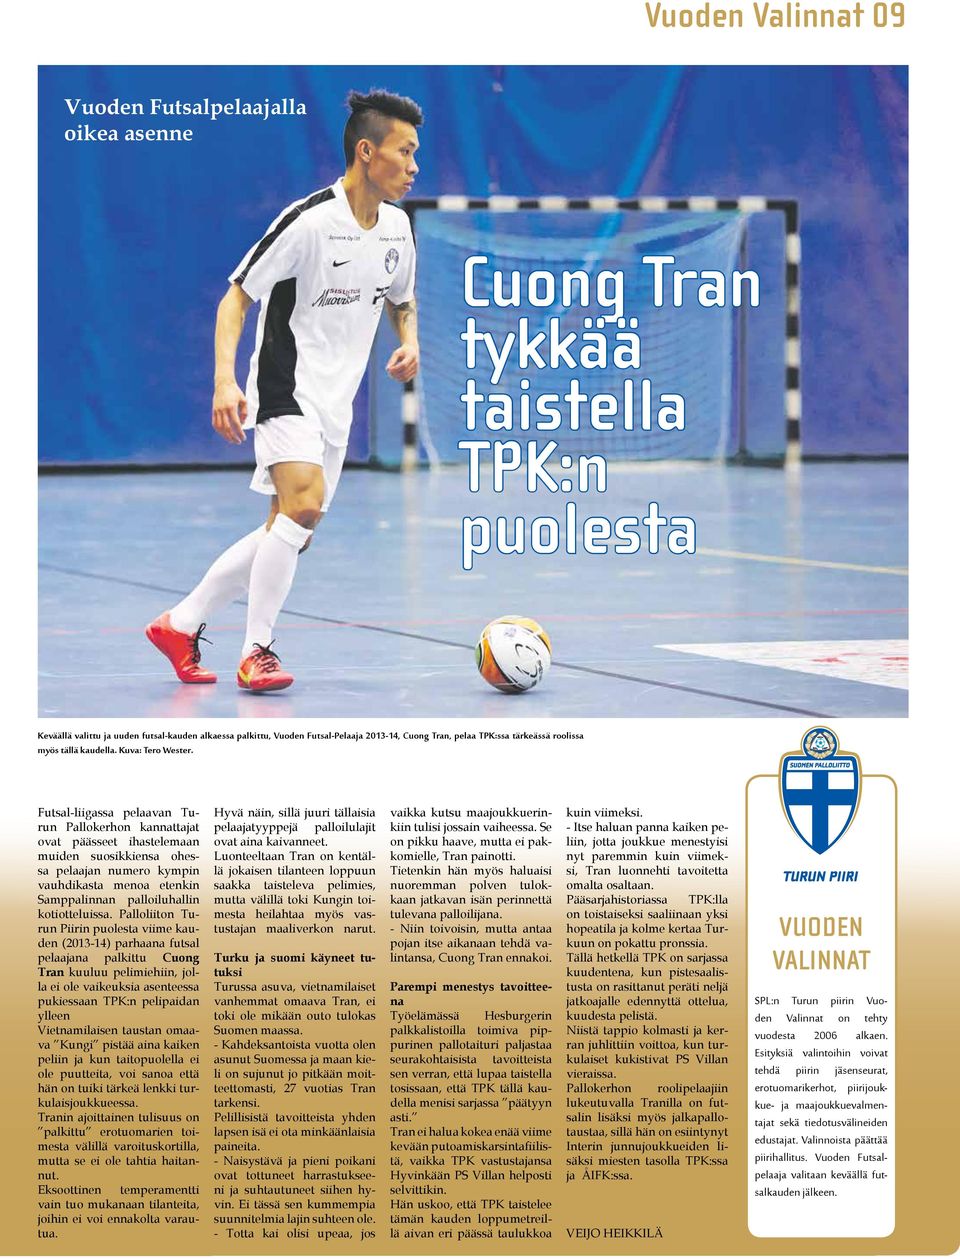 Futsal-liigassa pelaavan Turun Pallokerhon kannattajat ovat päässeet ihastelemaan muiden suosikkiensa ohessa pelaajan numero kympin vauhdikasta menoa etenkin Samppalinnan palloiluhallin